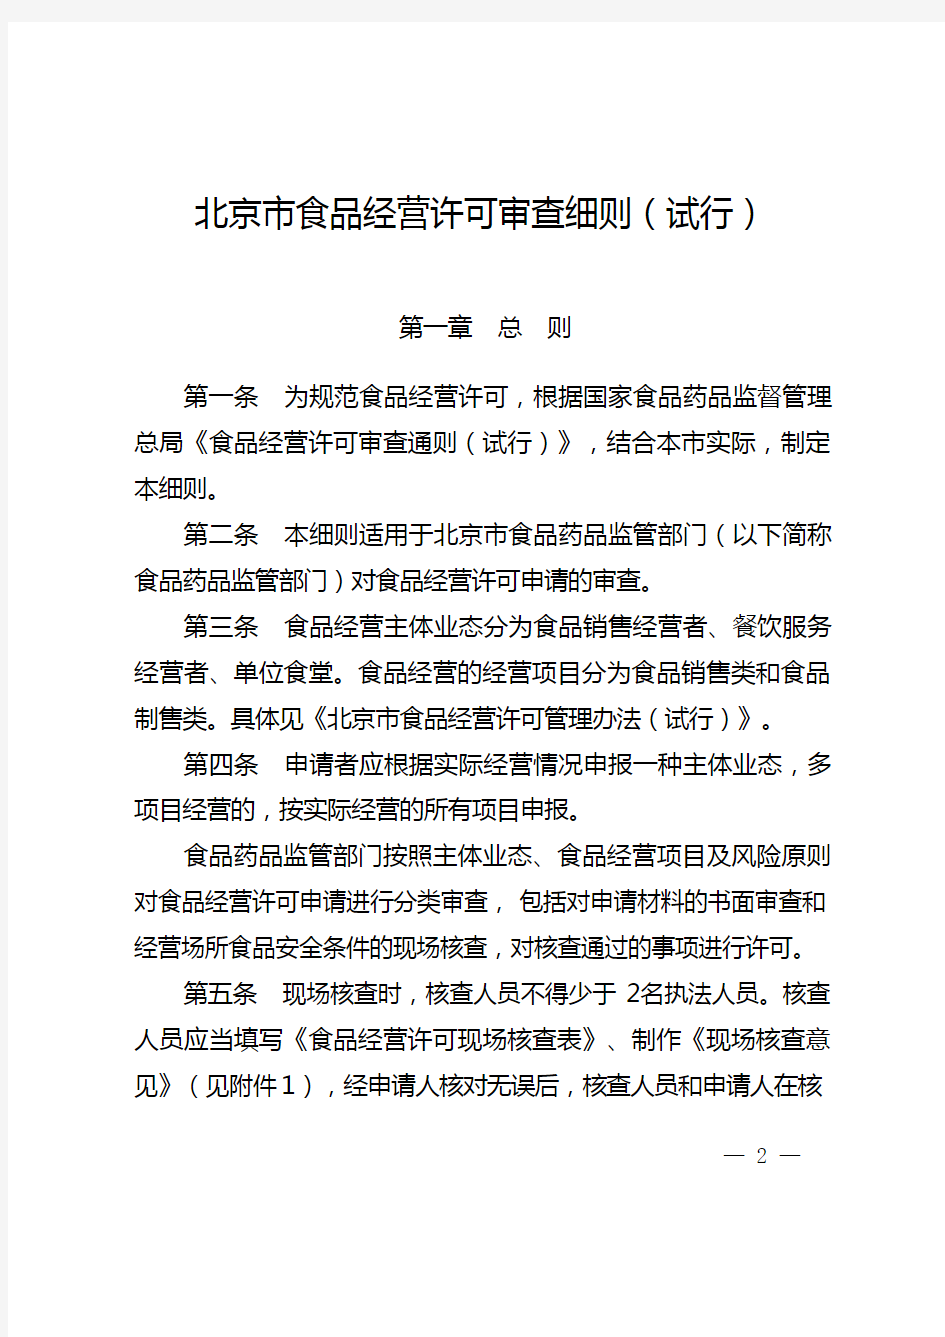 (经营管理)北京市食品经营许可审查细则(试行)